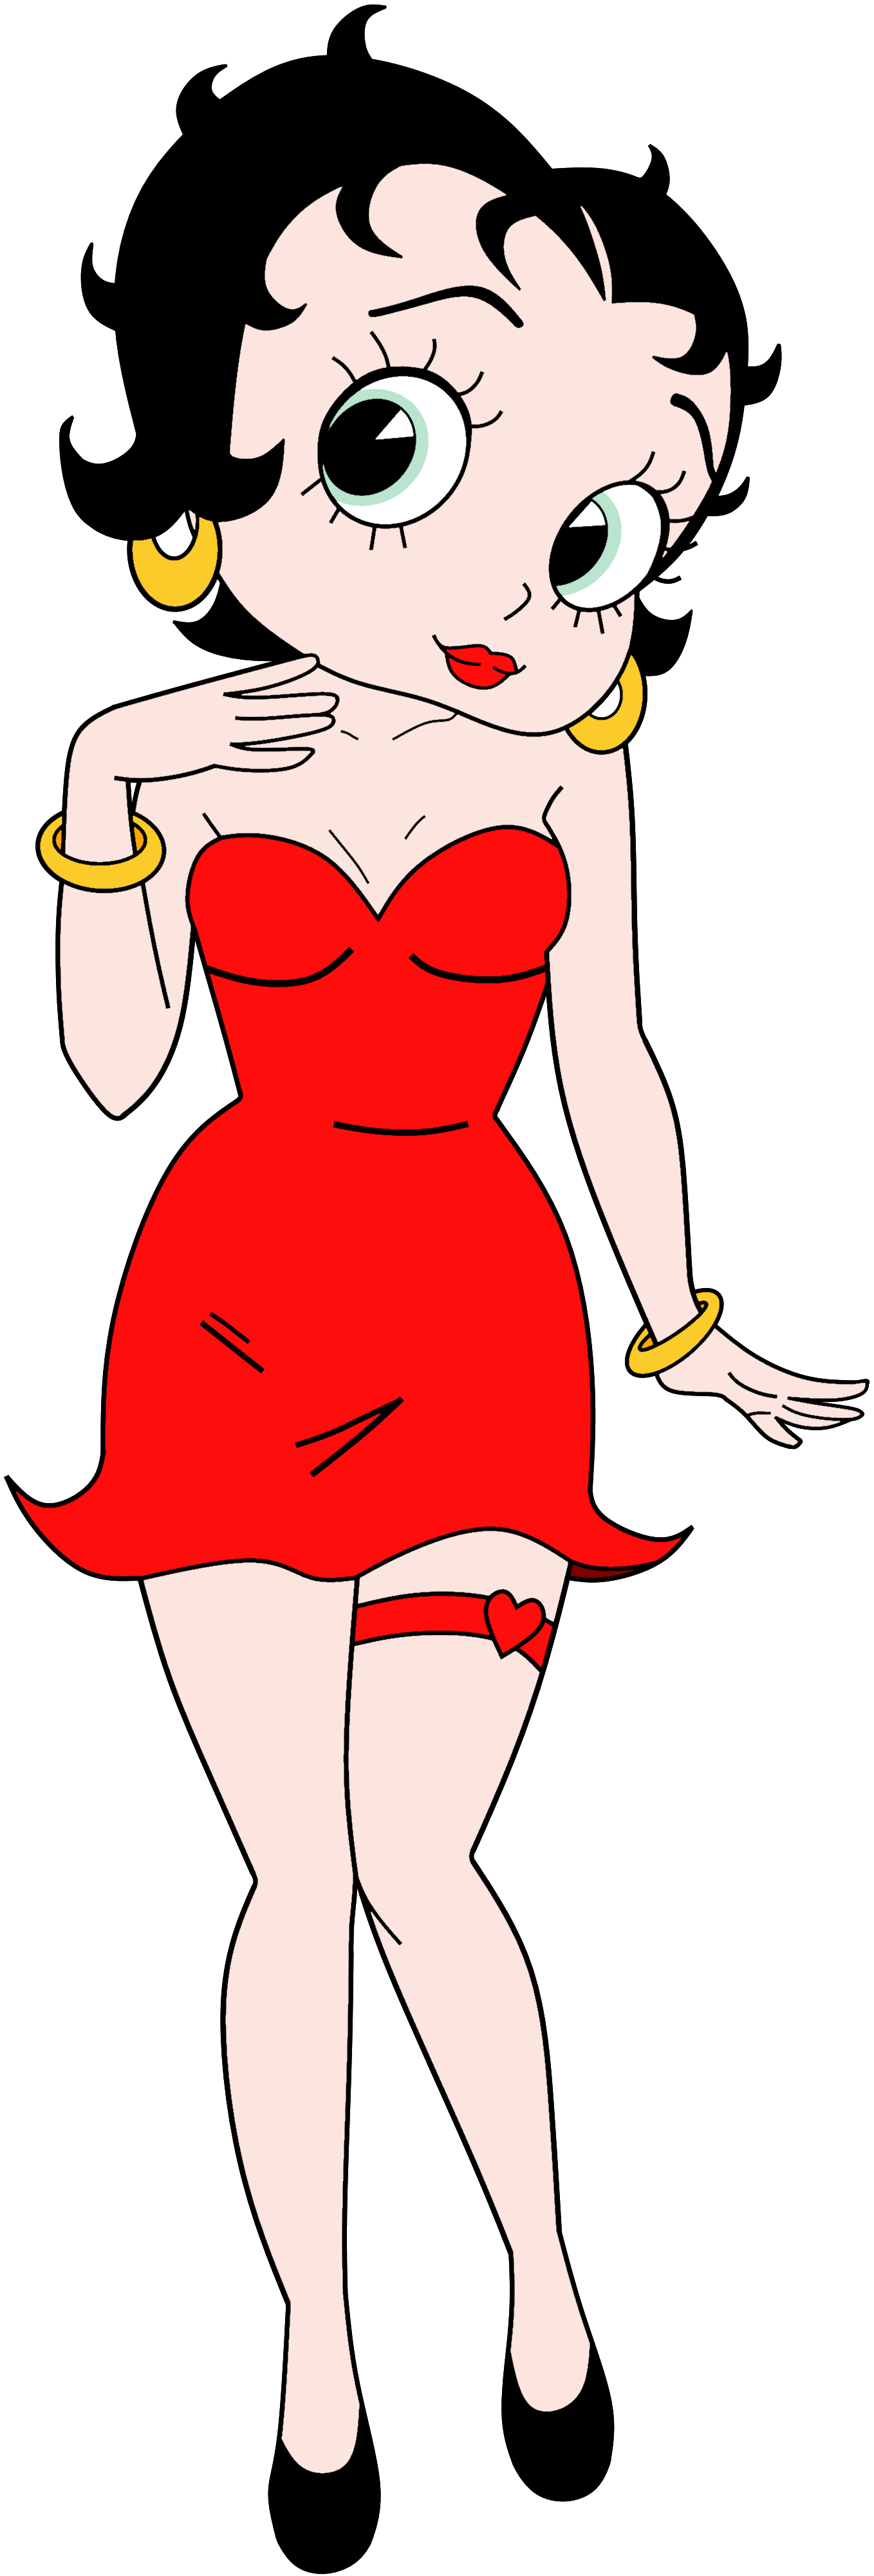 Betty Boop – Wikipédia, a enciclopédia livre